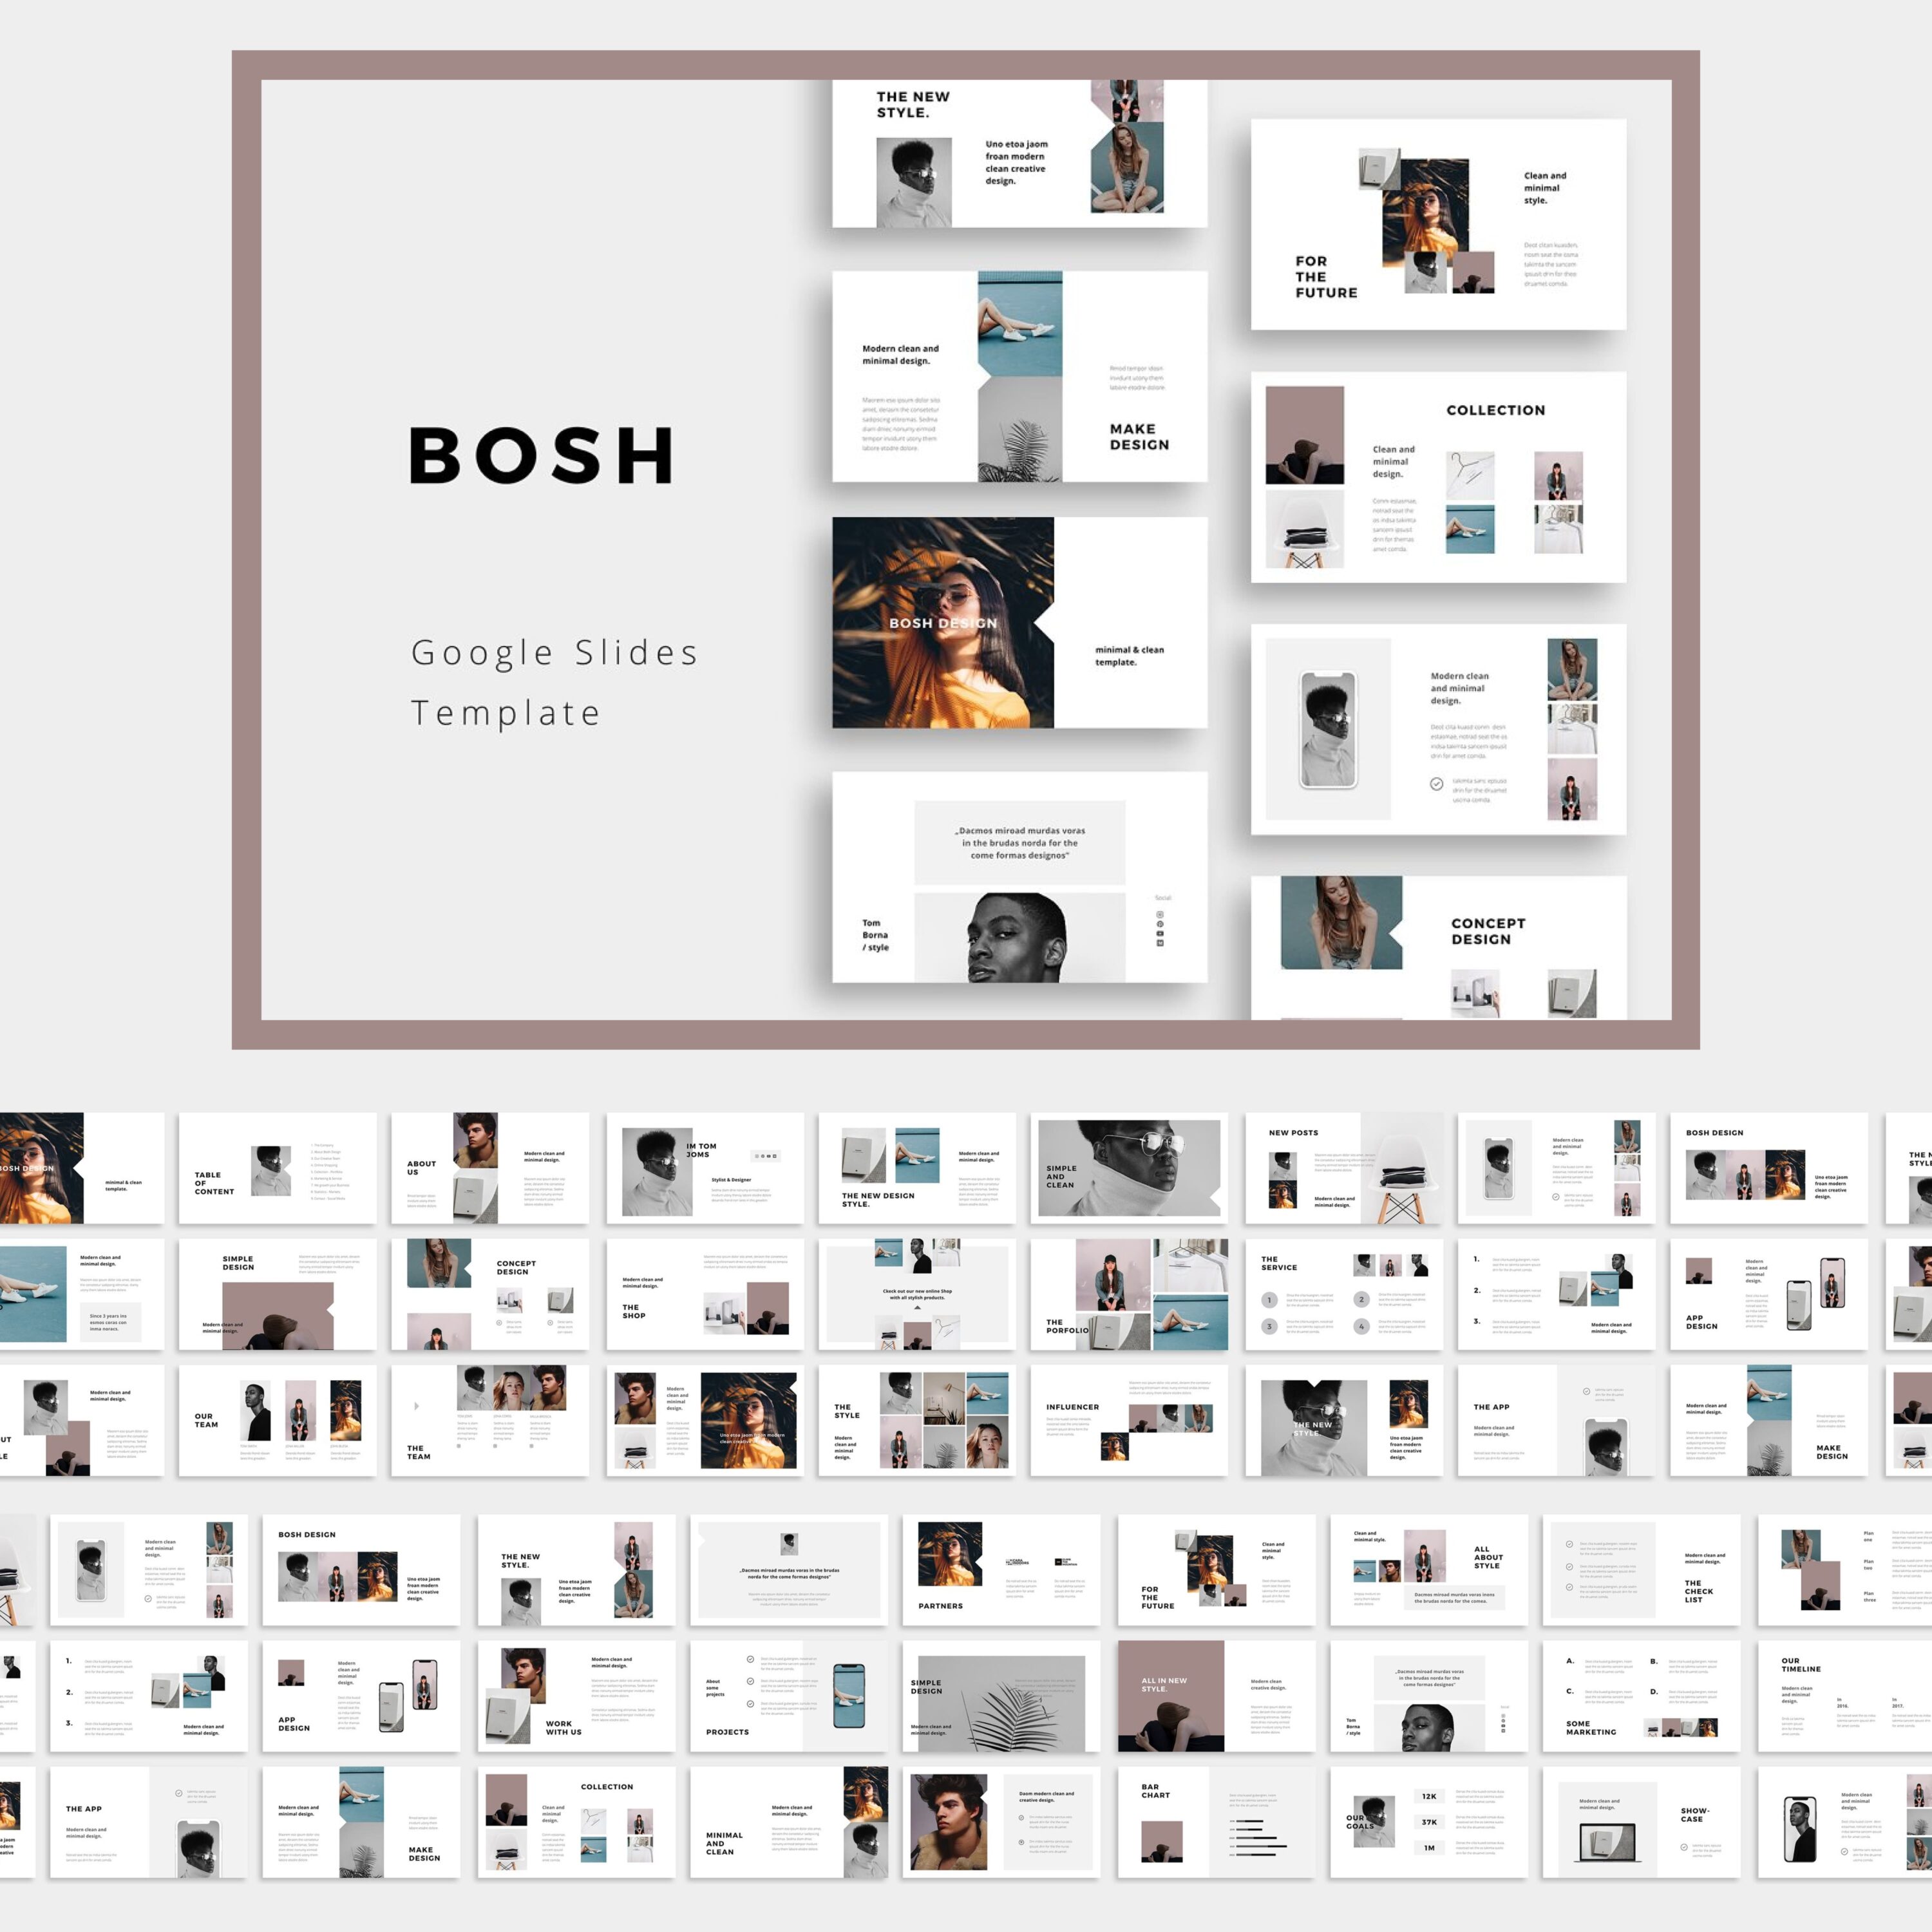 BOSH - Google Slide Template cover.